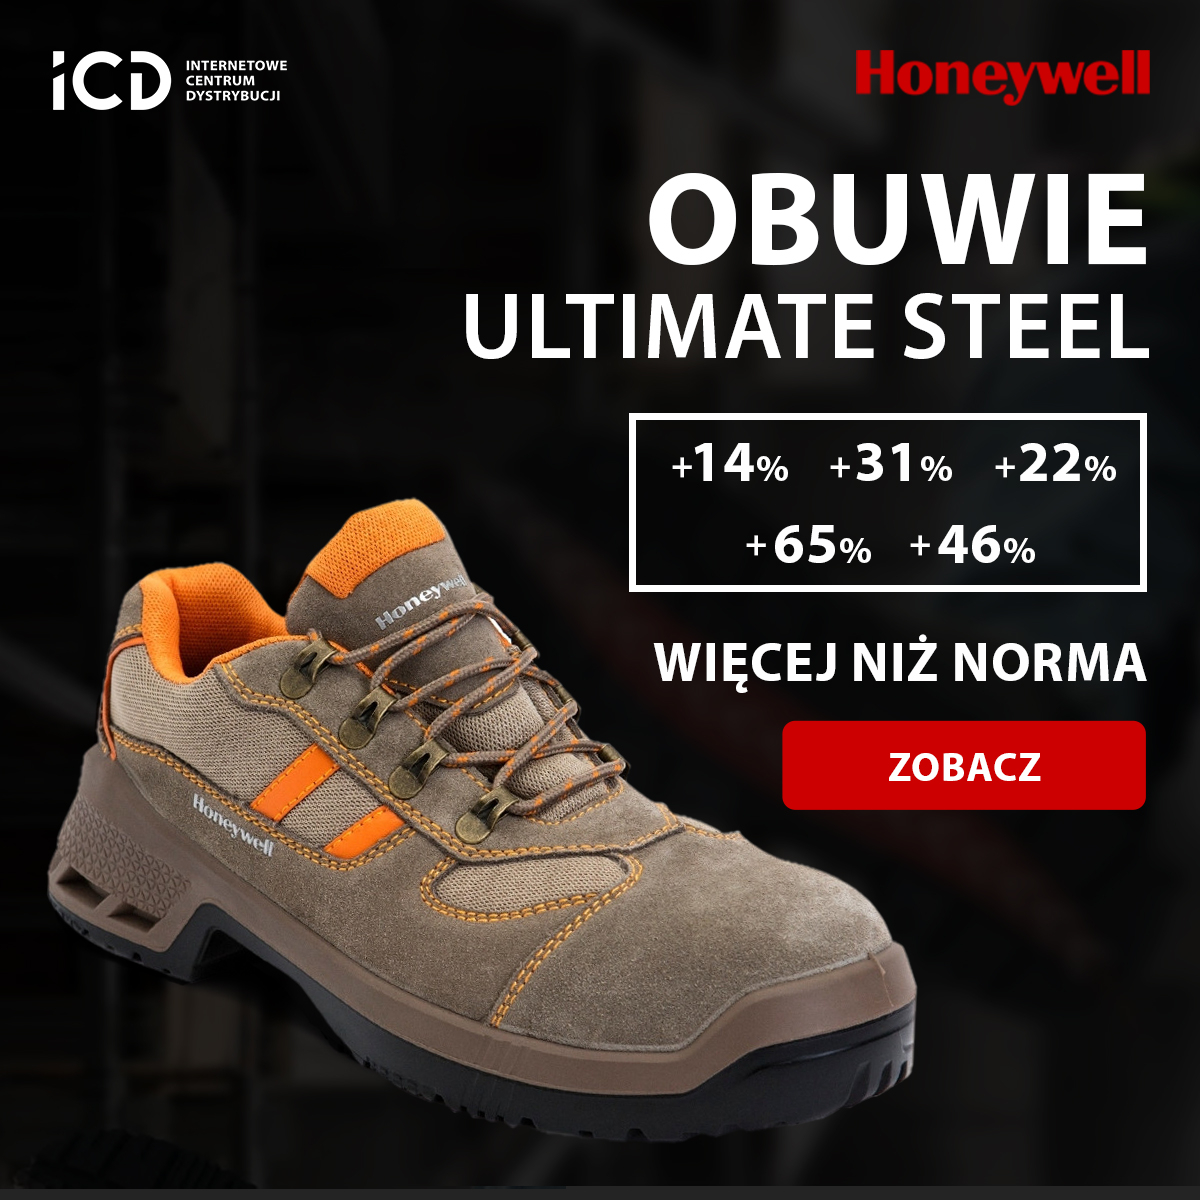 Obuwie Honeywell Ultimate & Ultimate Steel